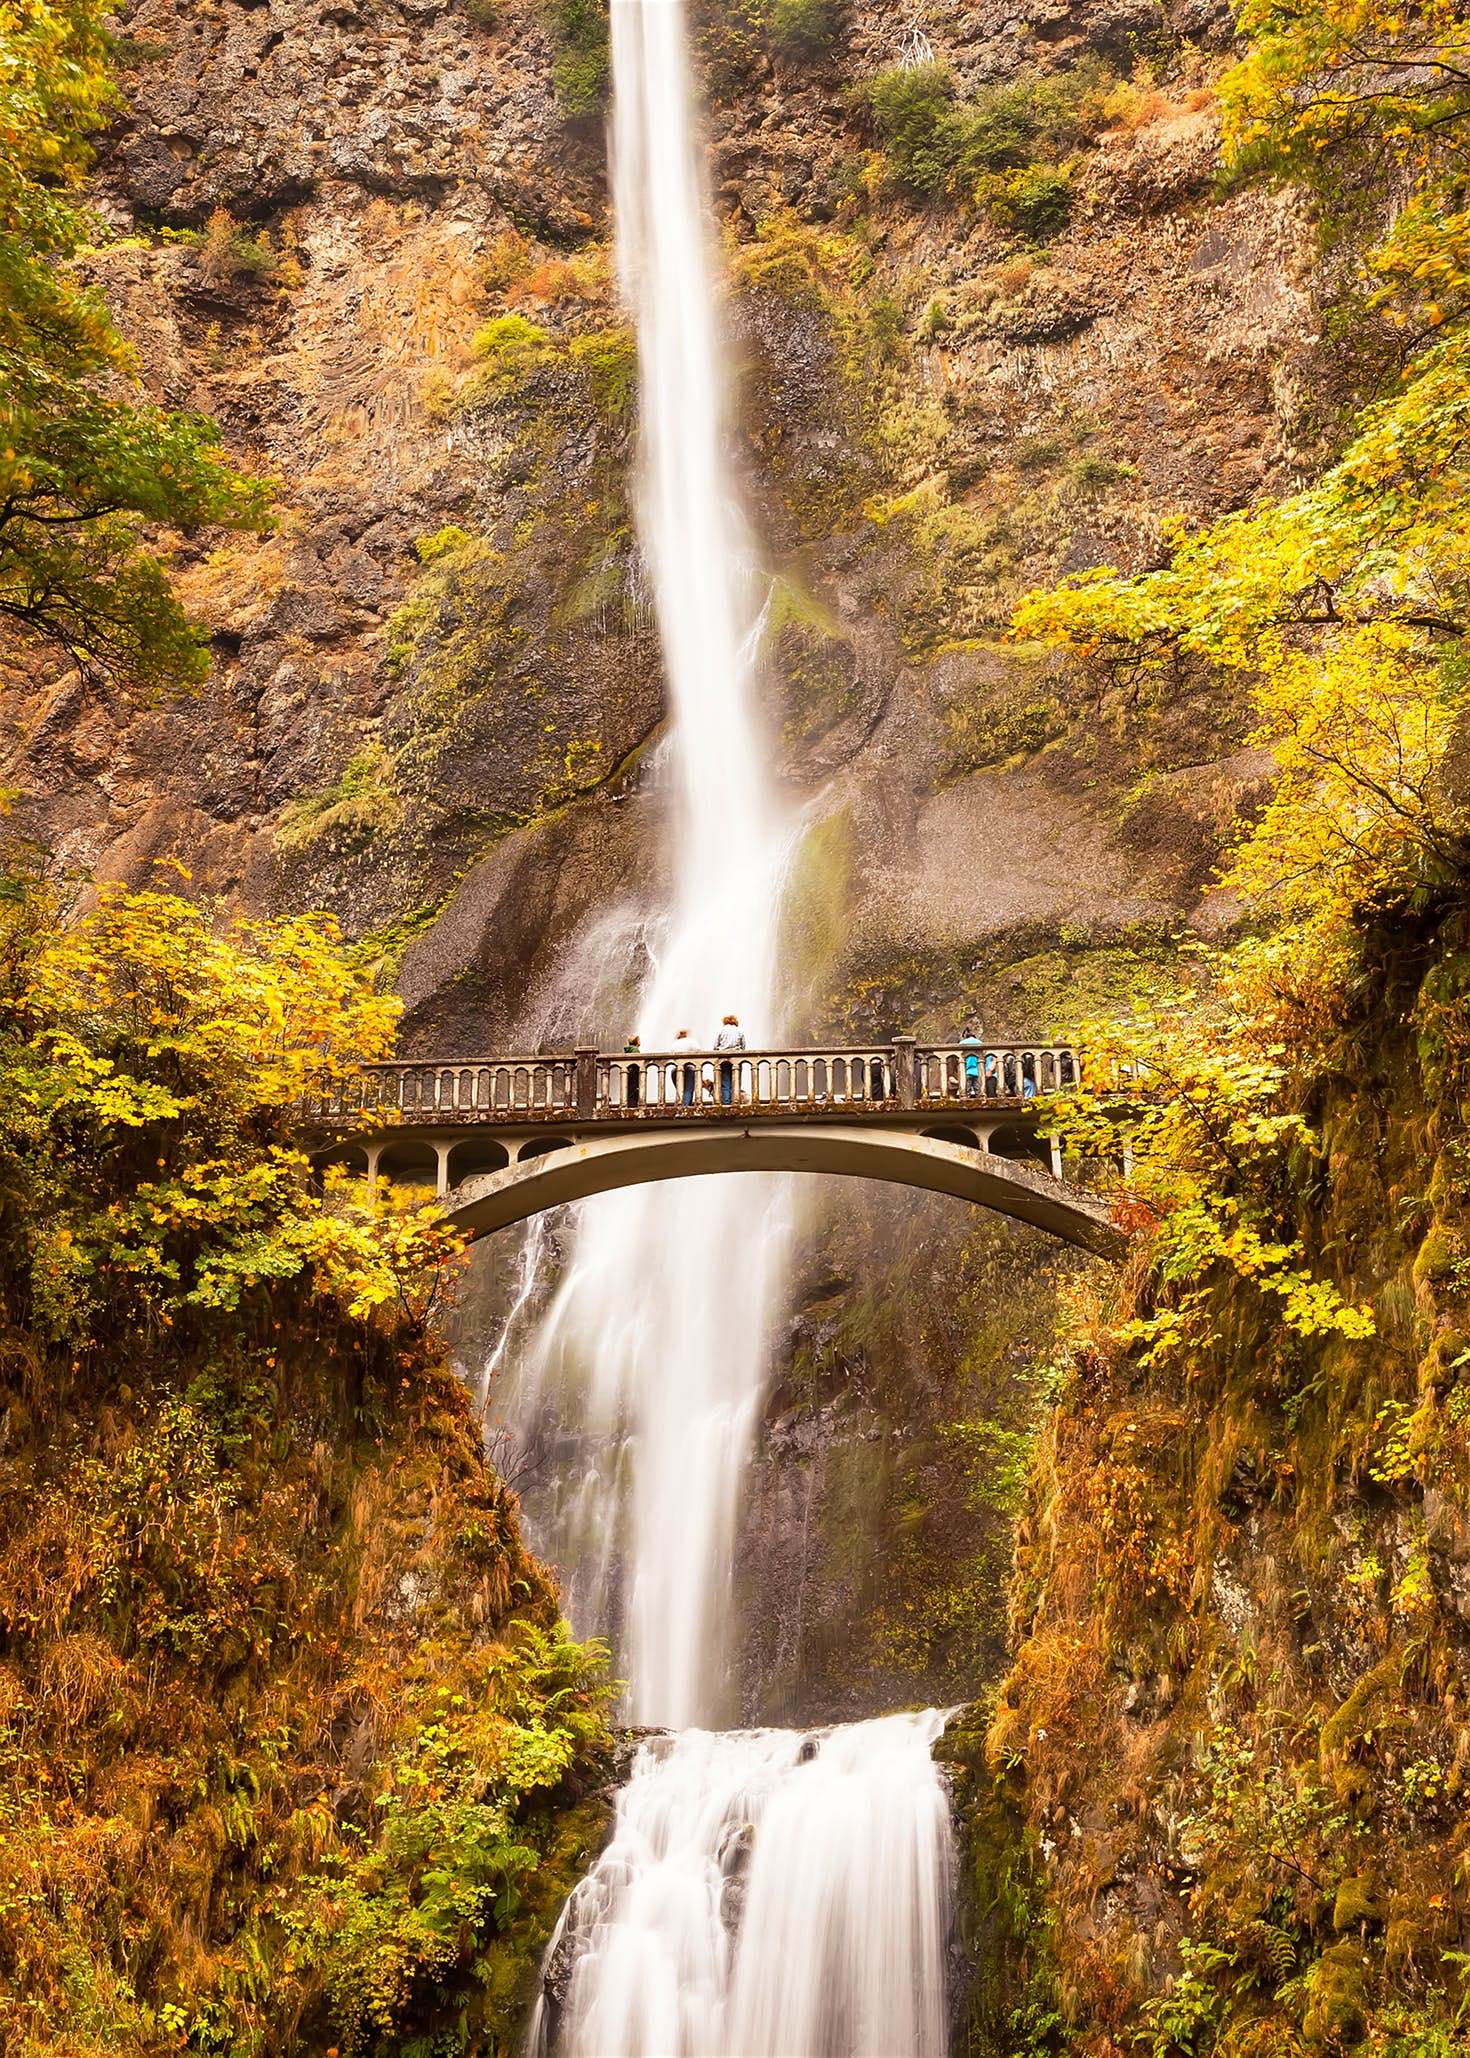 El plus de Columbia River Gorge está en sus ríos y cascadas que acompañado de los colores otoñales son dignos de una postal.